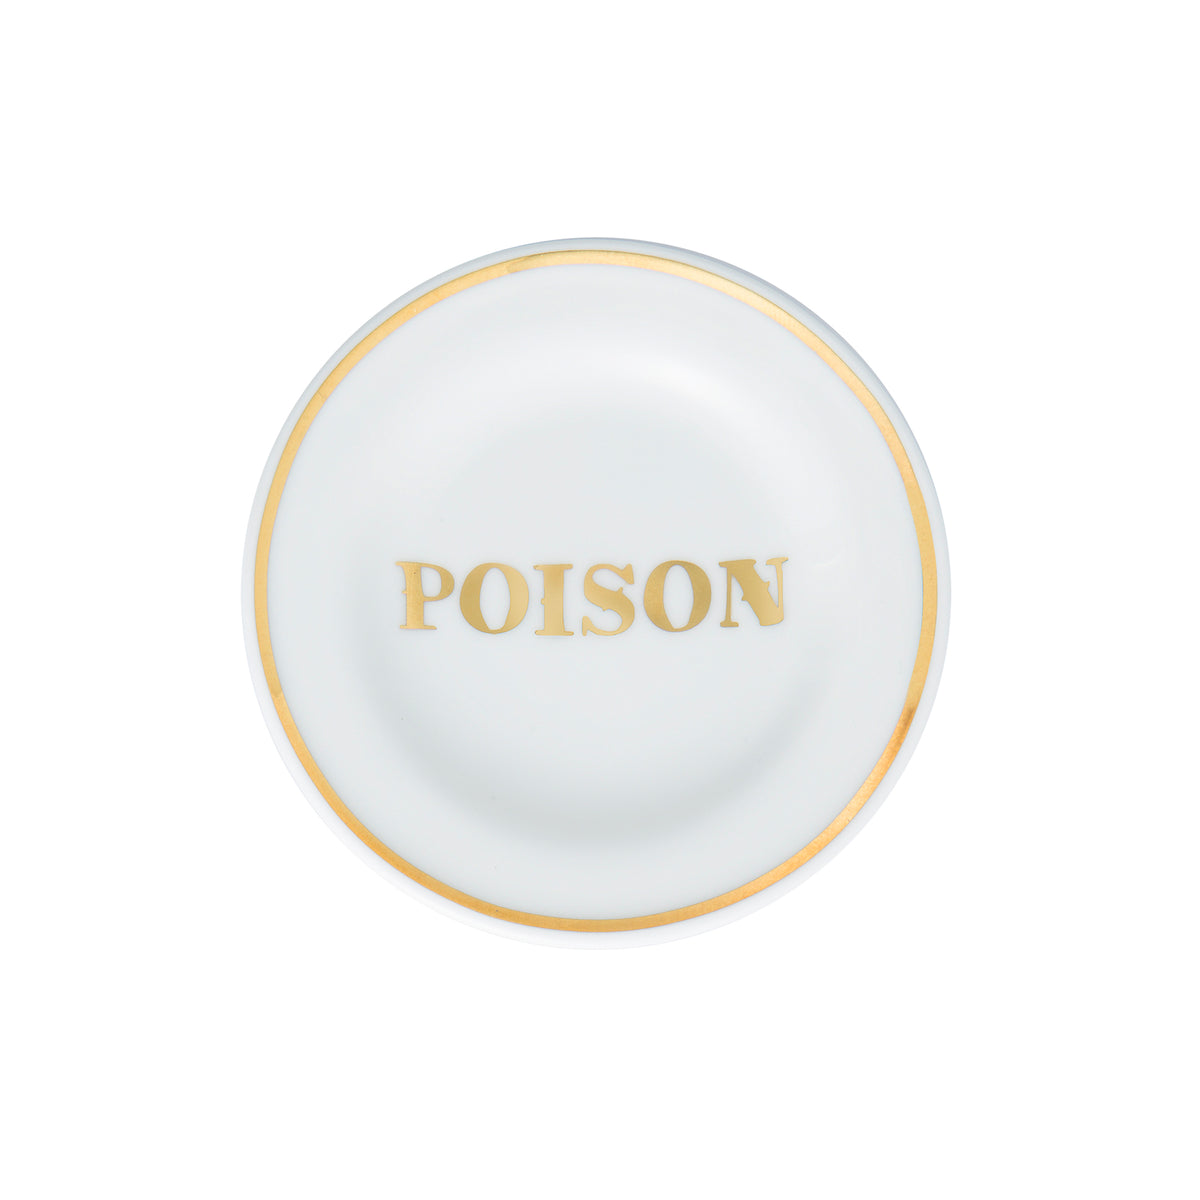 POISON Porcelain Plate. 10 cm